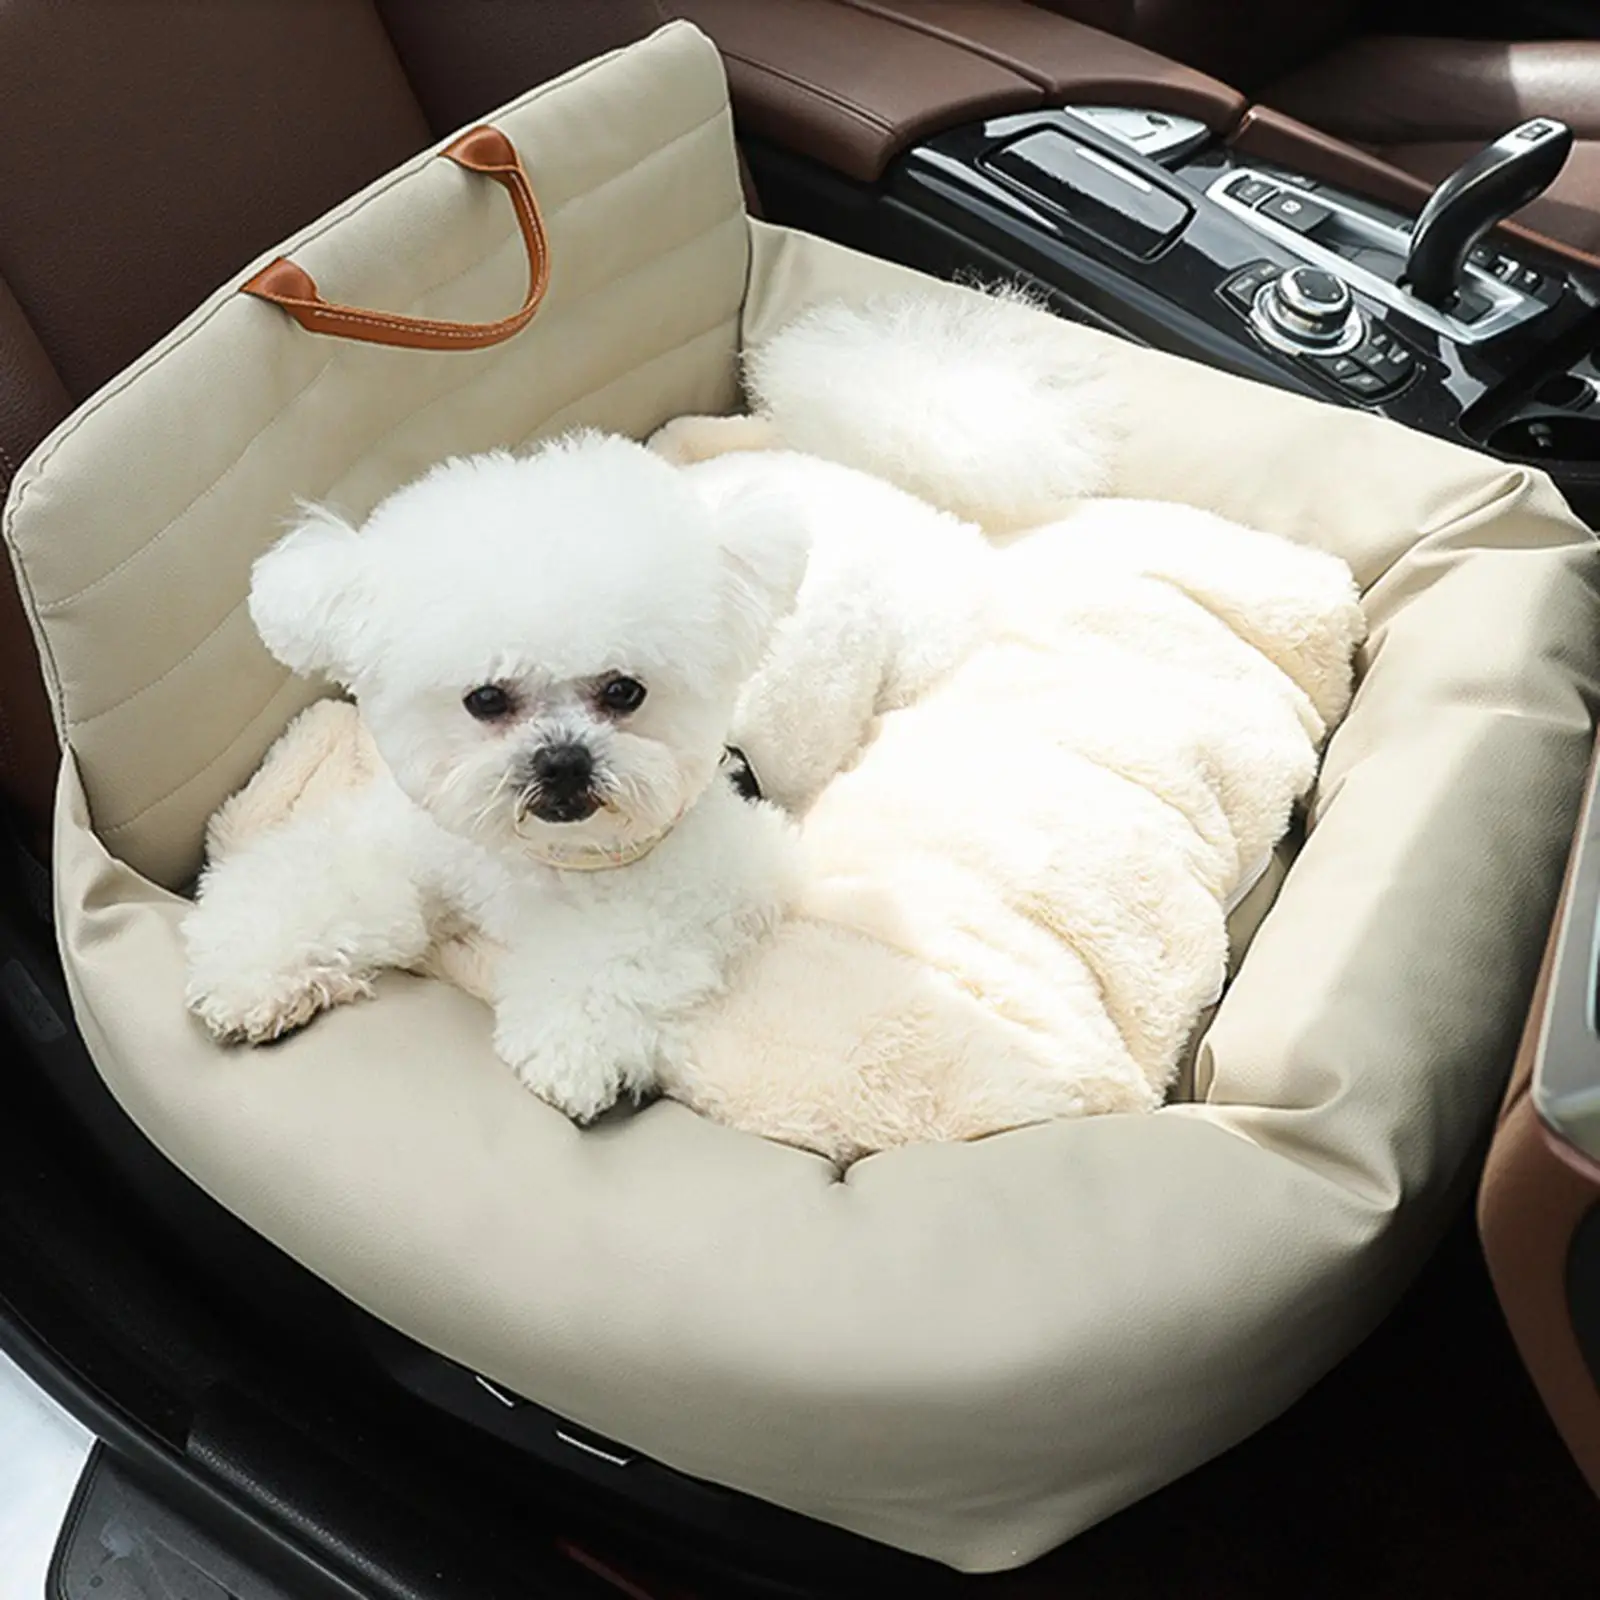 הכלב מושב מחמד שטח המושב הכלב מושב מכונית בינונית כלבים גור חתולים גדולים . ' - ' . 3